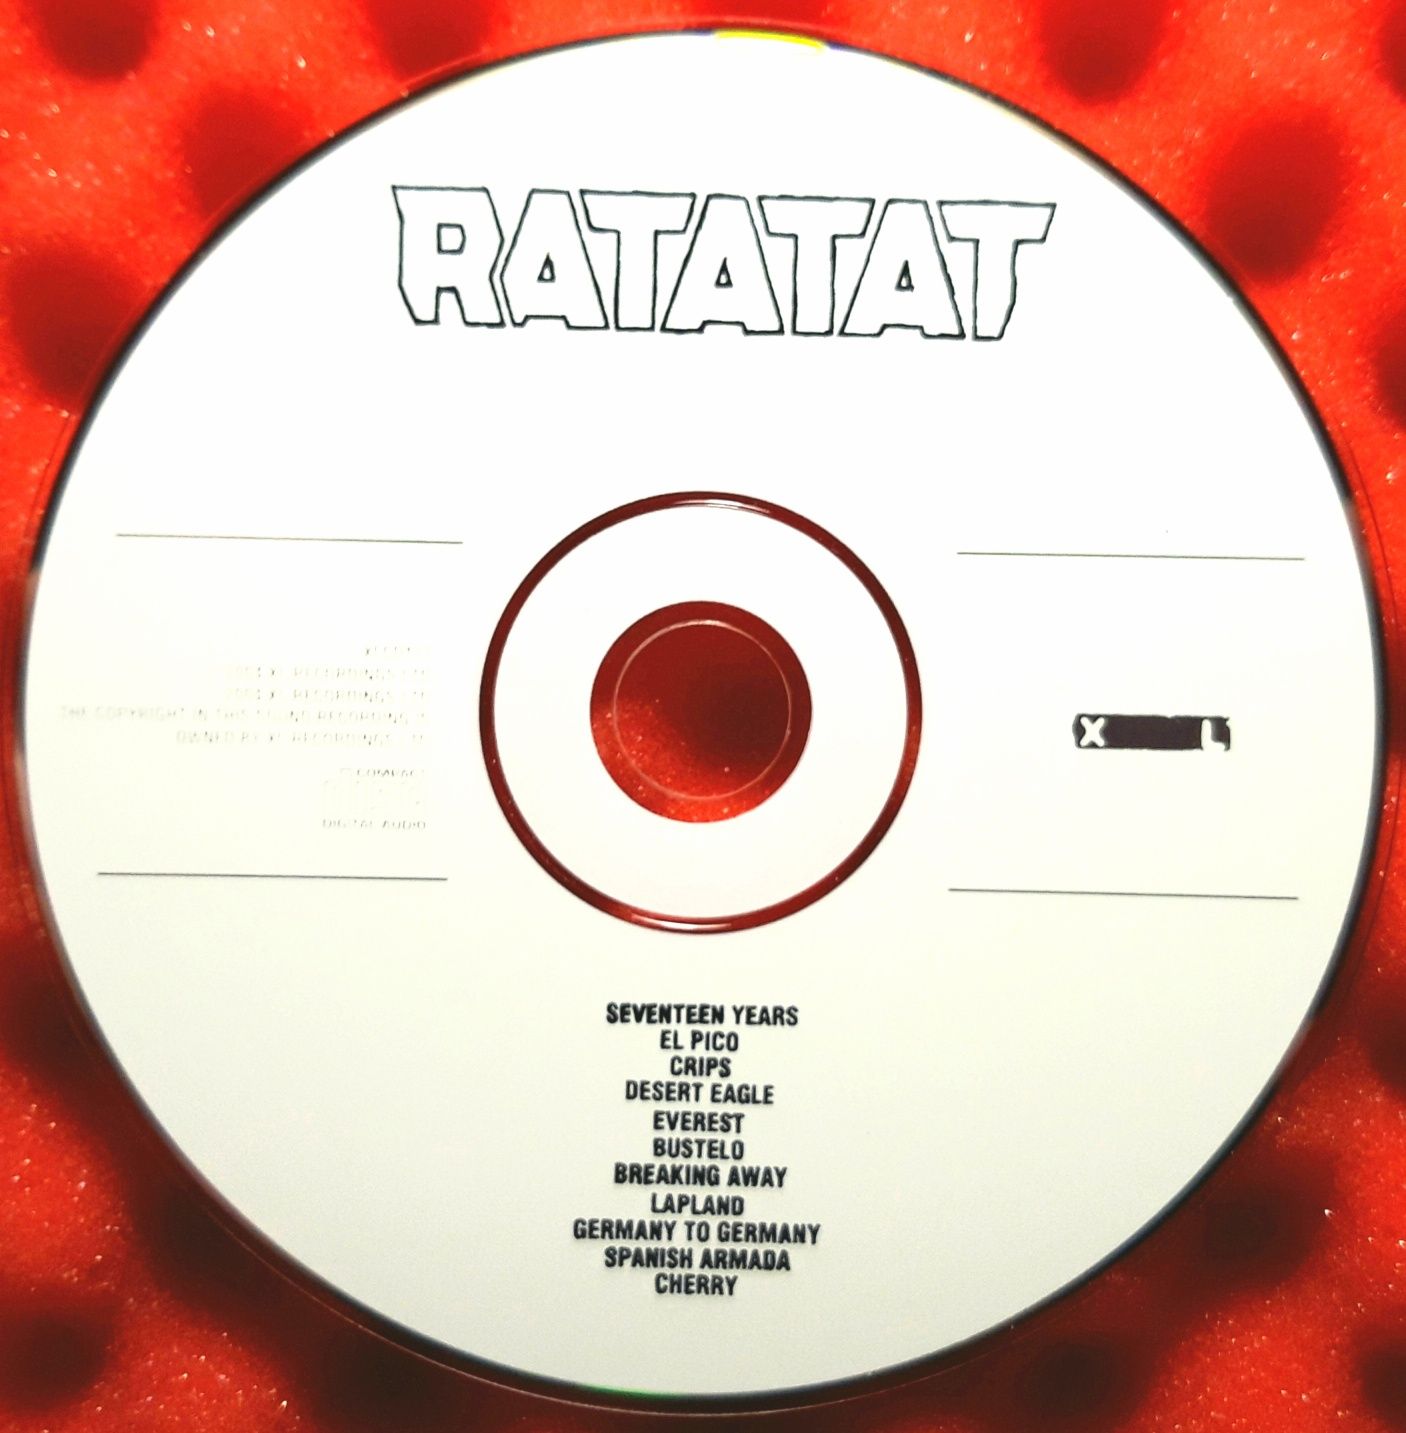 Ratatat – Ratatat (CD, 2004)